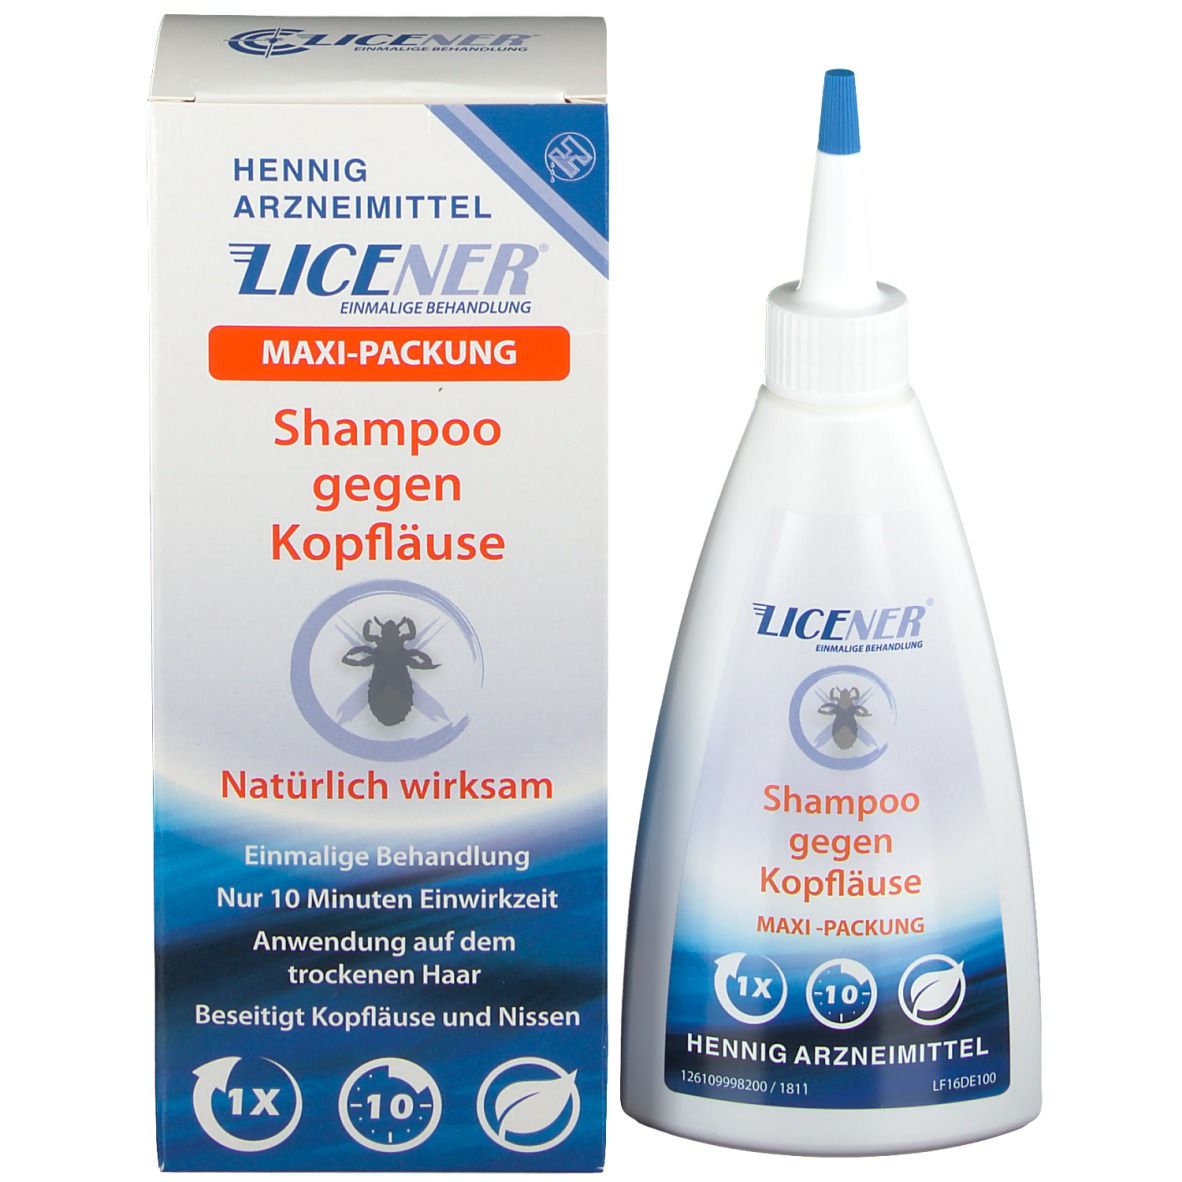 Licener® Shampoo Kopfläuse und Nissen 200 ml - shop-apotheke.com